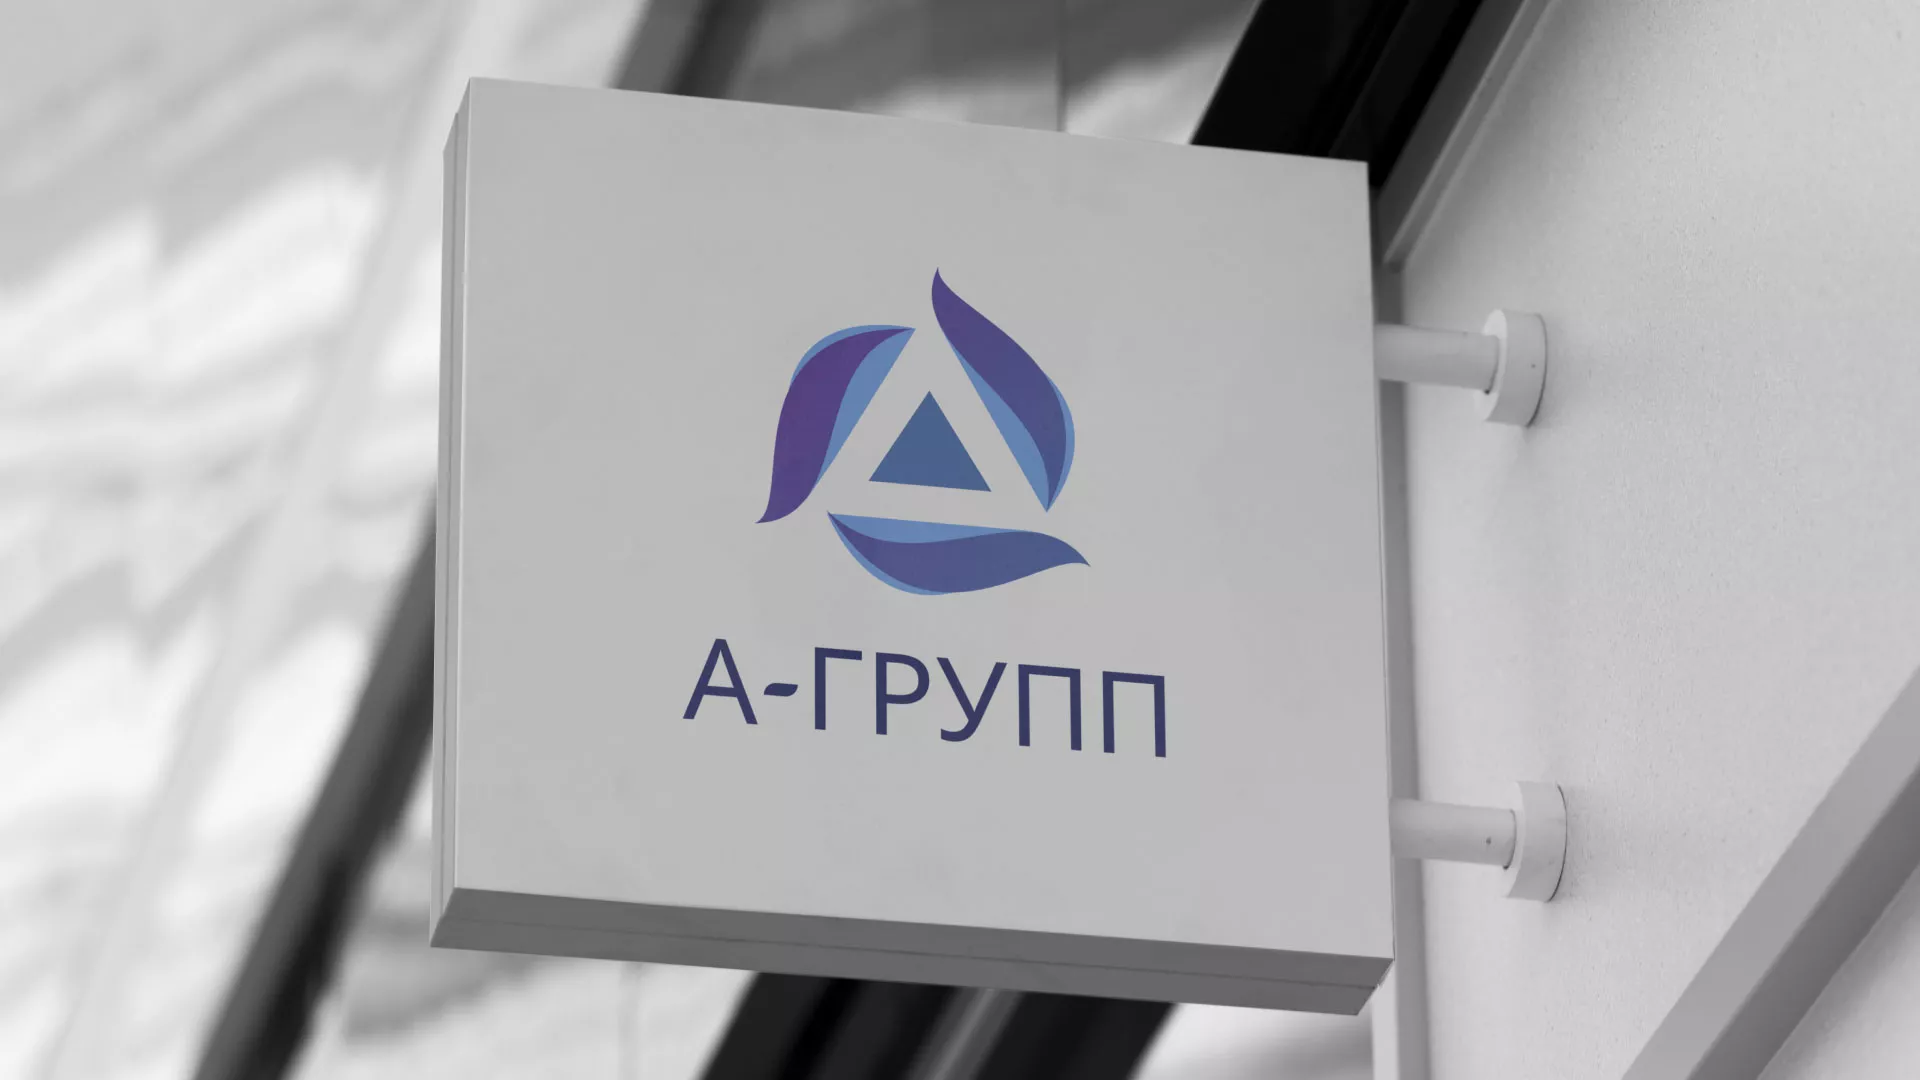 Создание логотипа компании «А-ГРУПП» в Зуевке